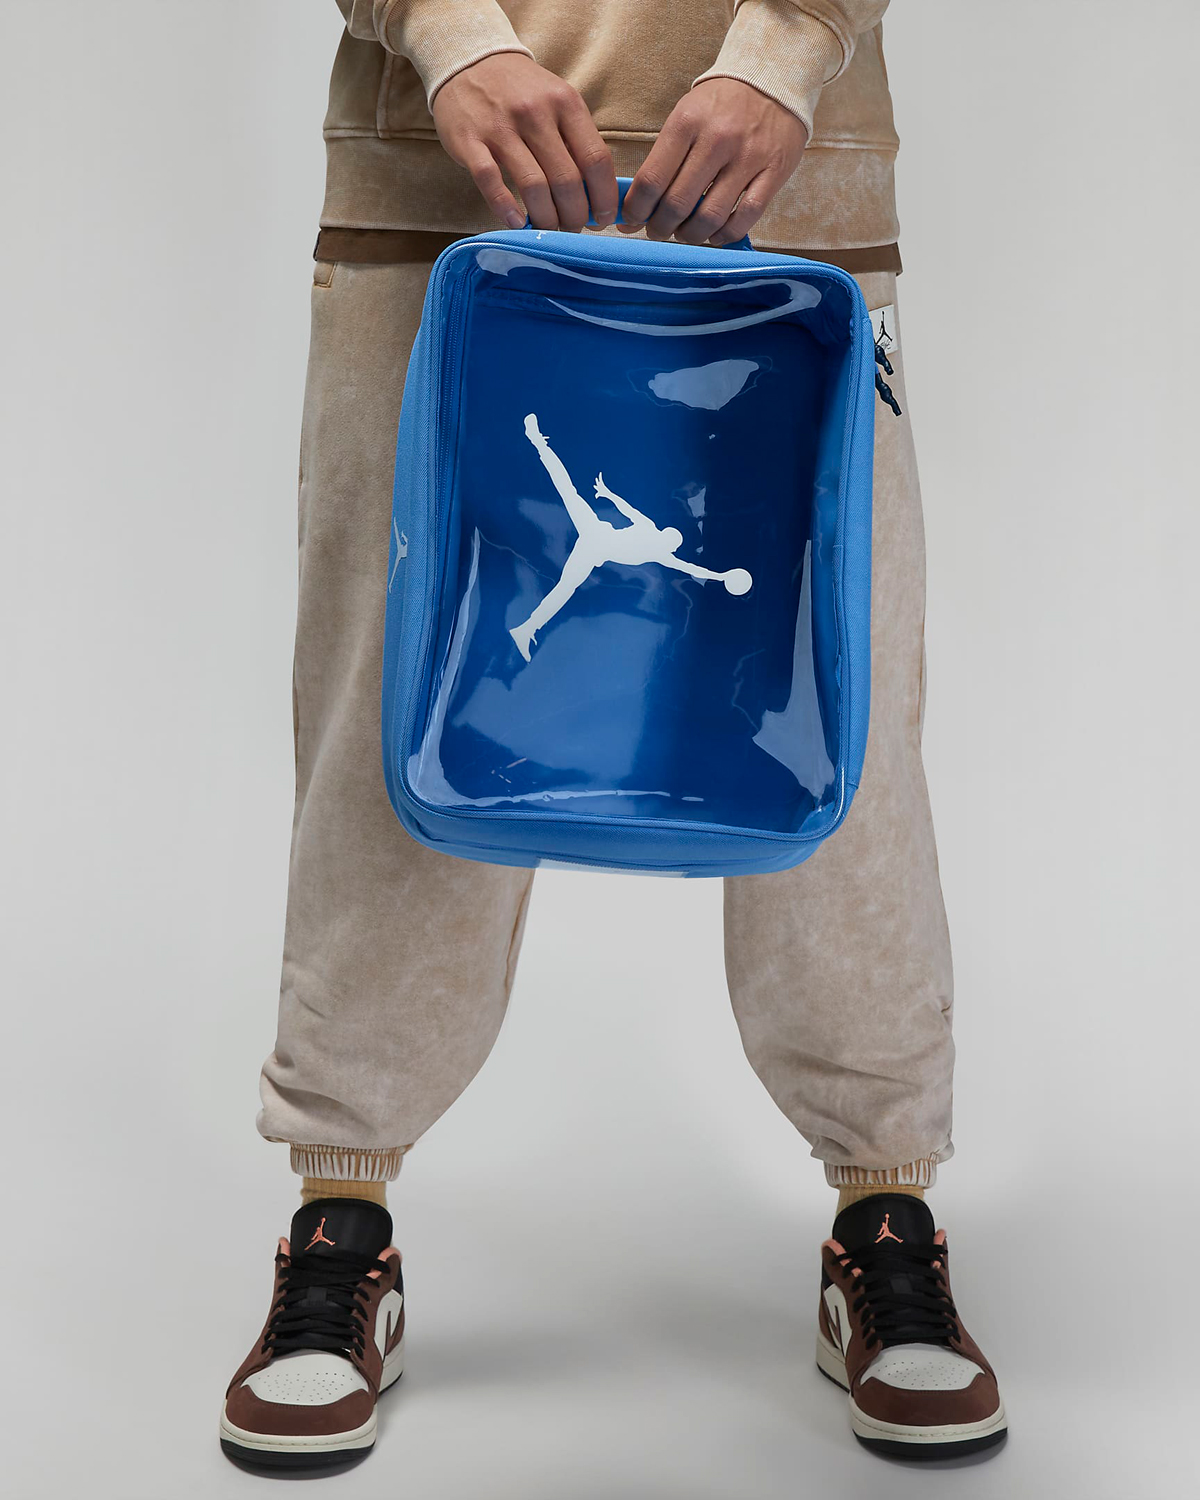 Jordan-Shoe-Box-Bag-University-Blue-1